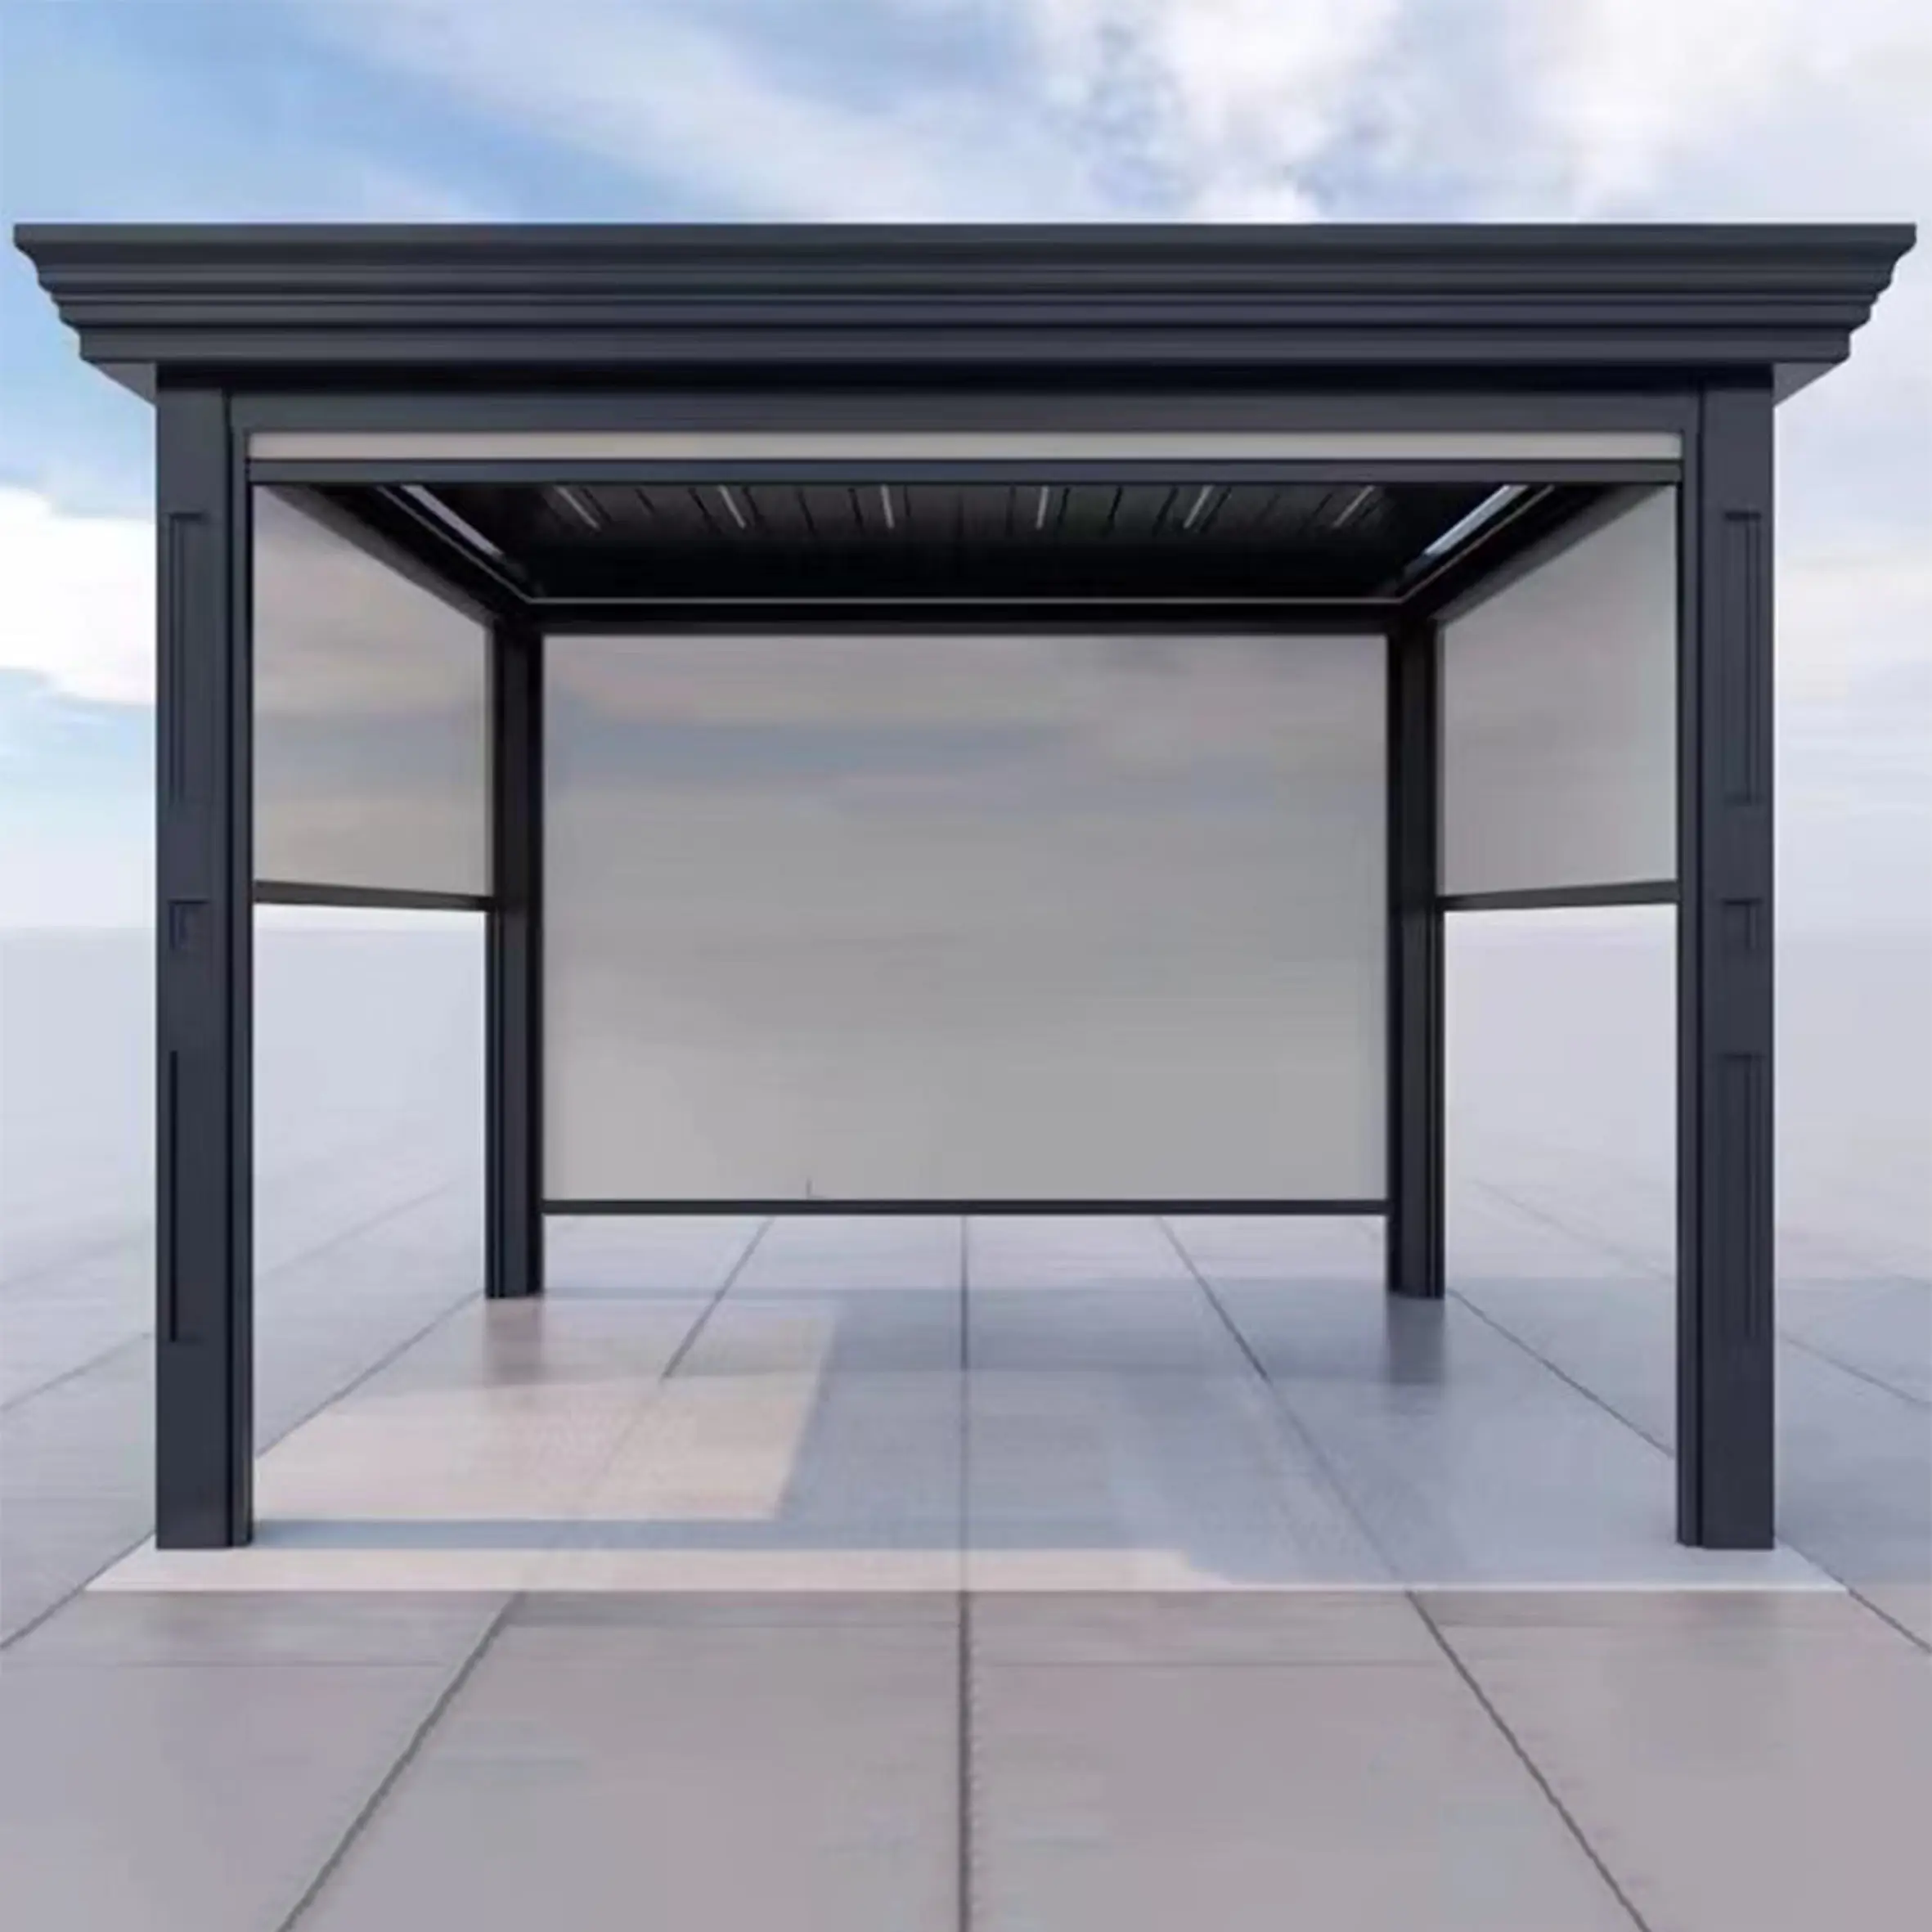 Couverture de patio toile d'aluminium, toit ouvrant Pergola bioclimatique Auvents rétractables motorisés Pièces détachées/